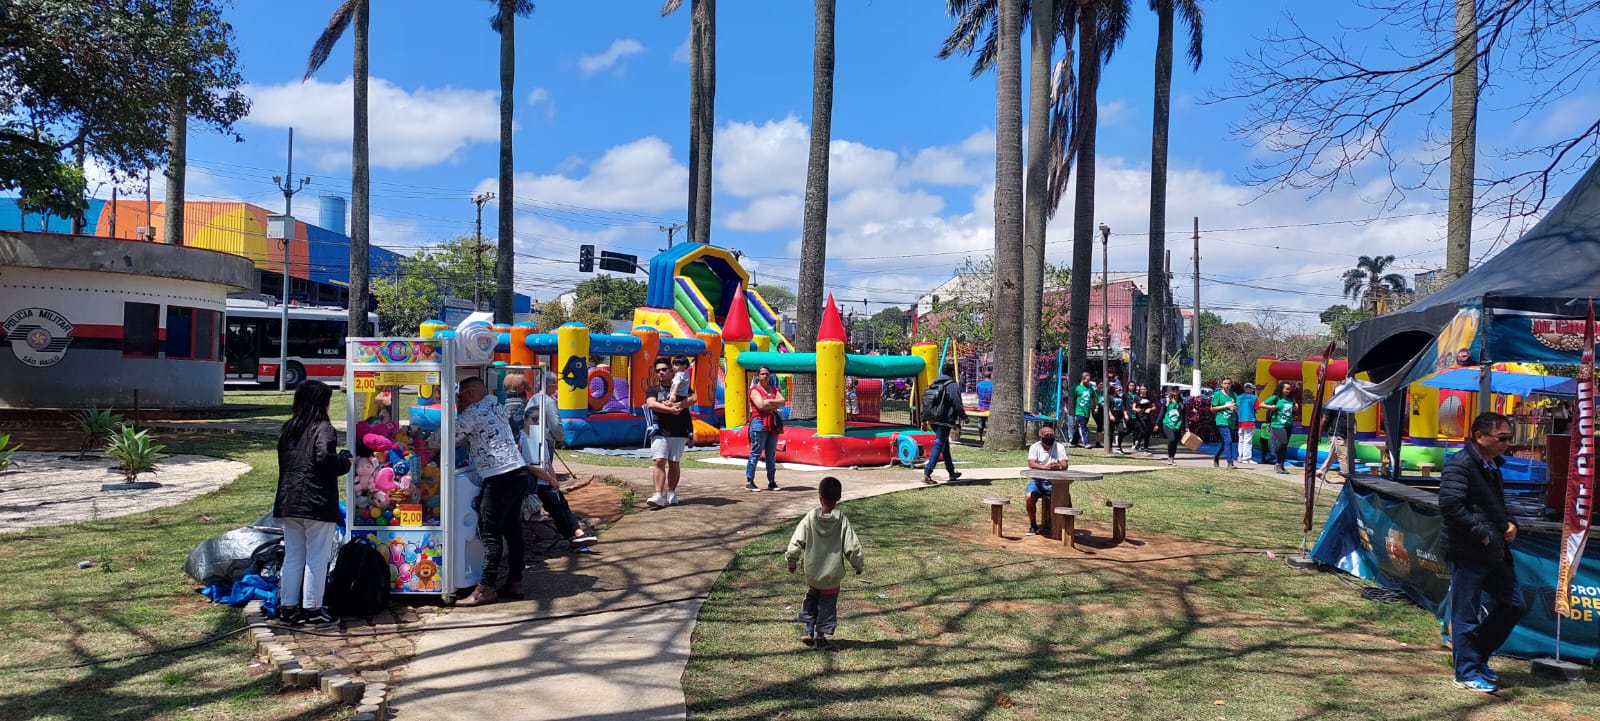 Largo de São Mateus, vários brinquedos infláveis para crianças, algumas barraquinhas de comida e várias pessoas ao redor.